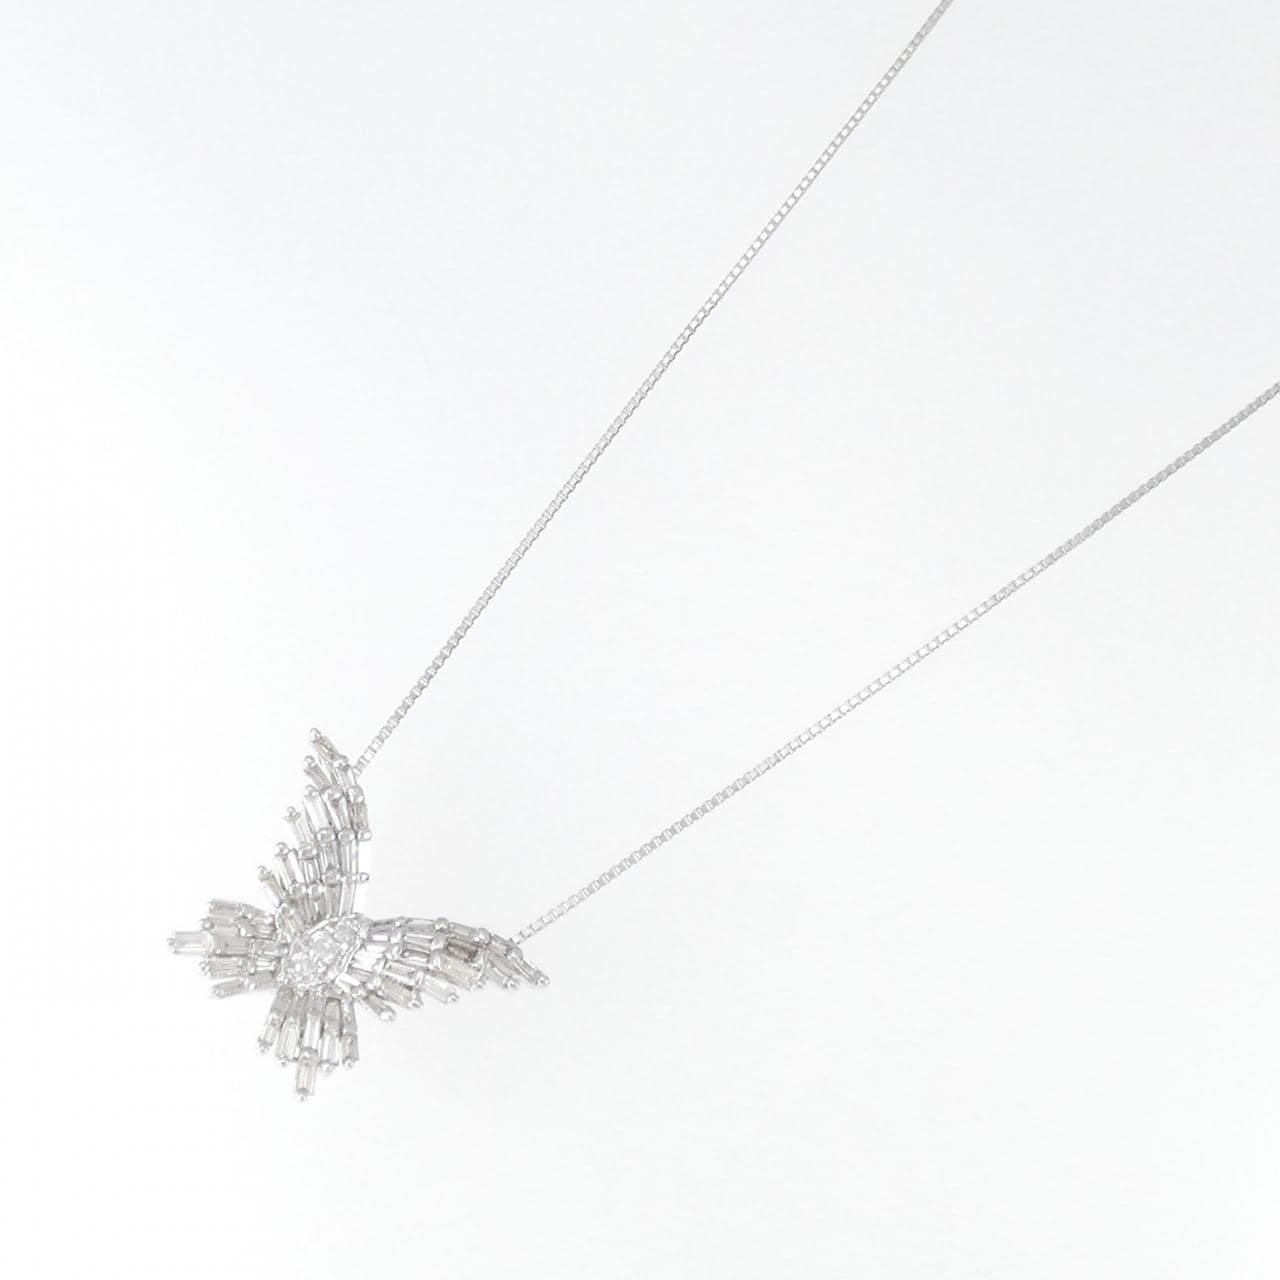 K18WG butterfly Diamond necklace 1.00CT